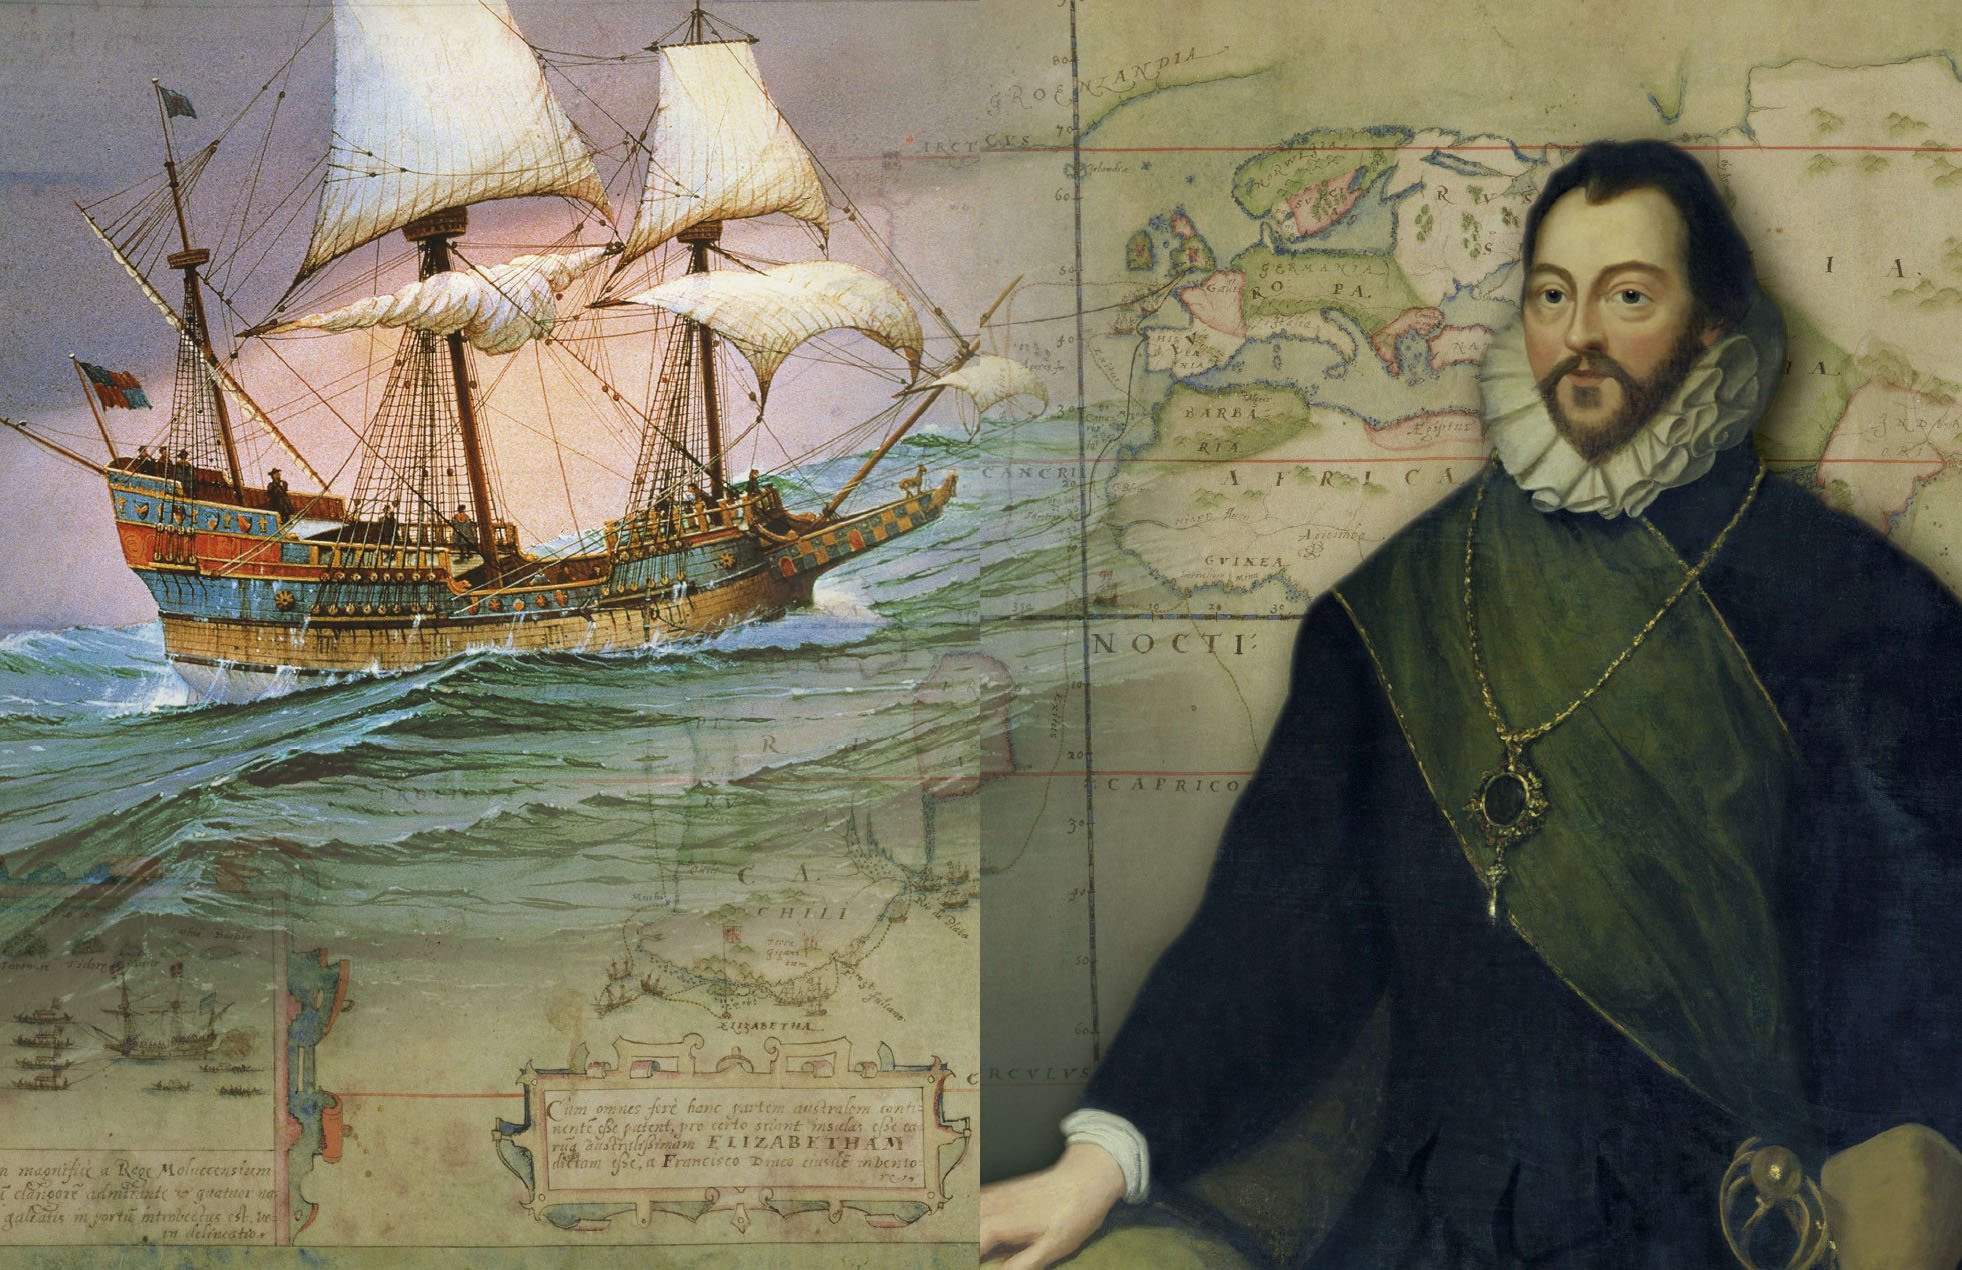 Второй кругосветное путешествие. Фрэнсис Дрейк 1540-1596. Фрэнсис Дрейк пират. Корабли в путешествие Фрэнсиса Дрейка. Мореплаватель Фрэнсис Дрейк.